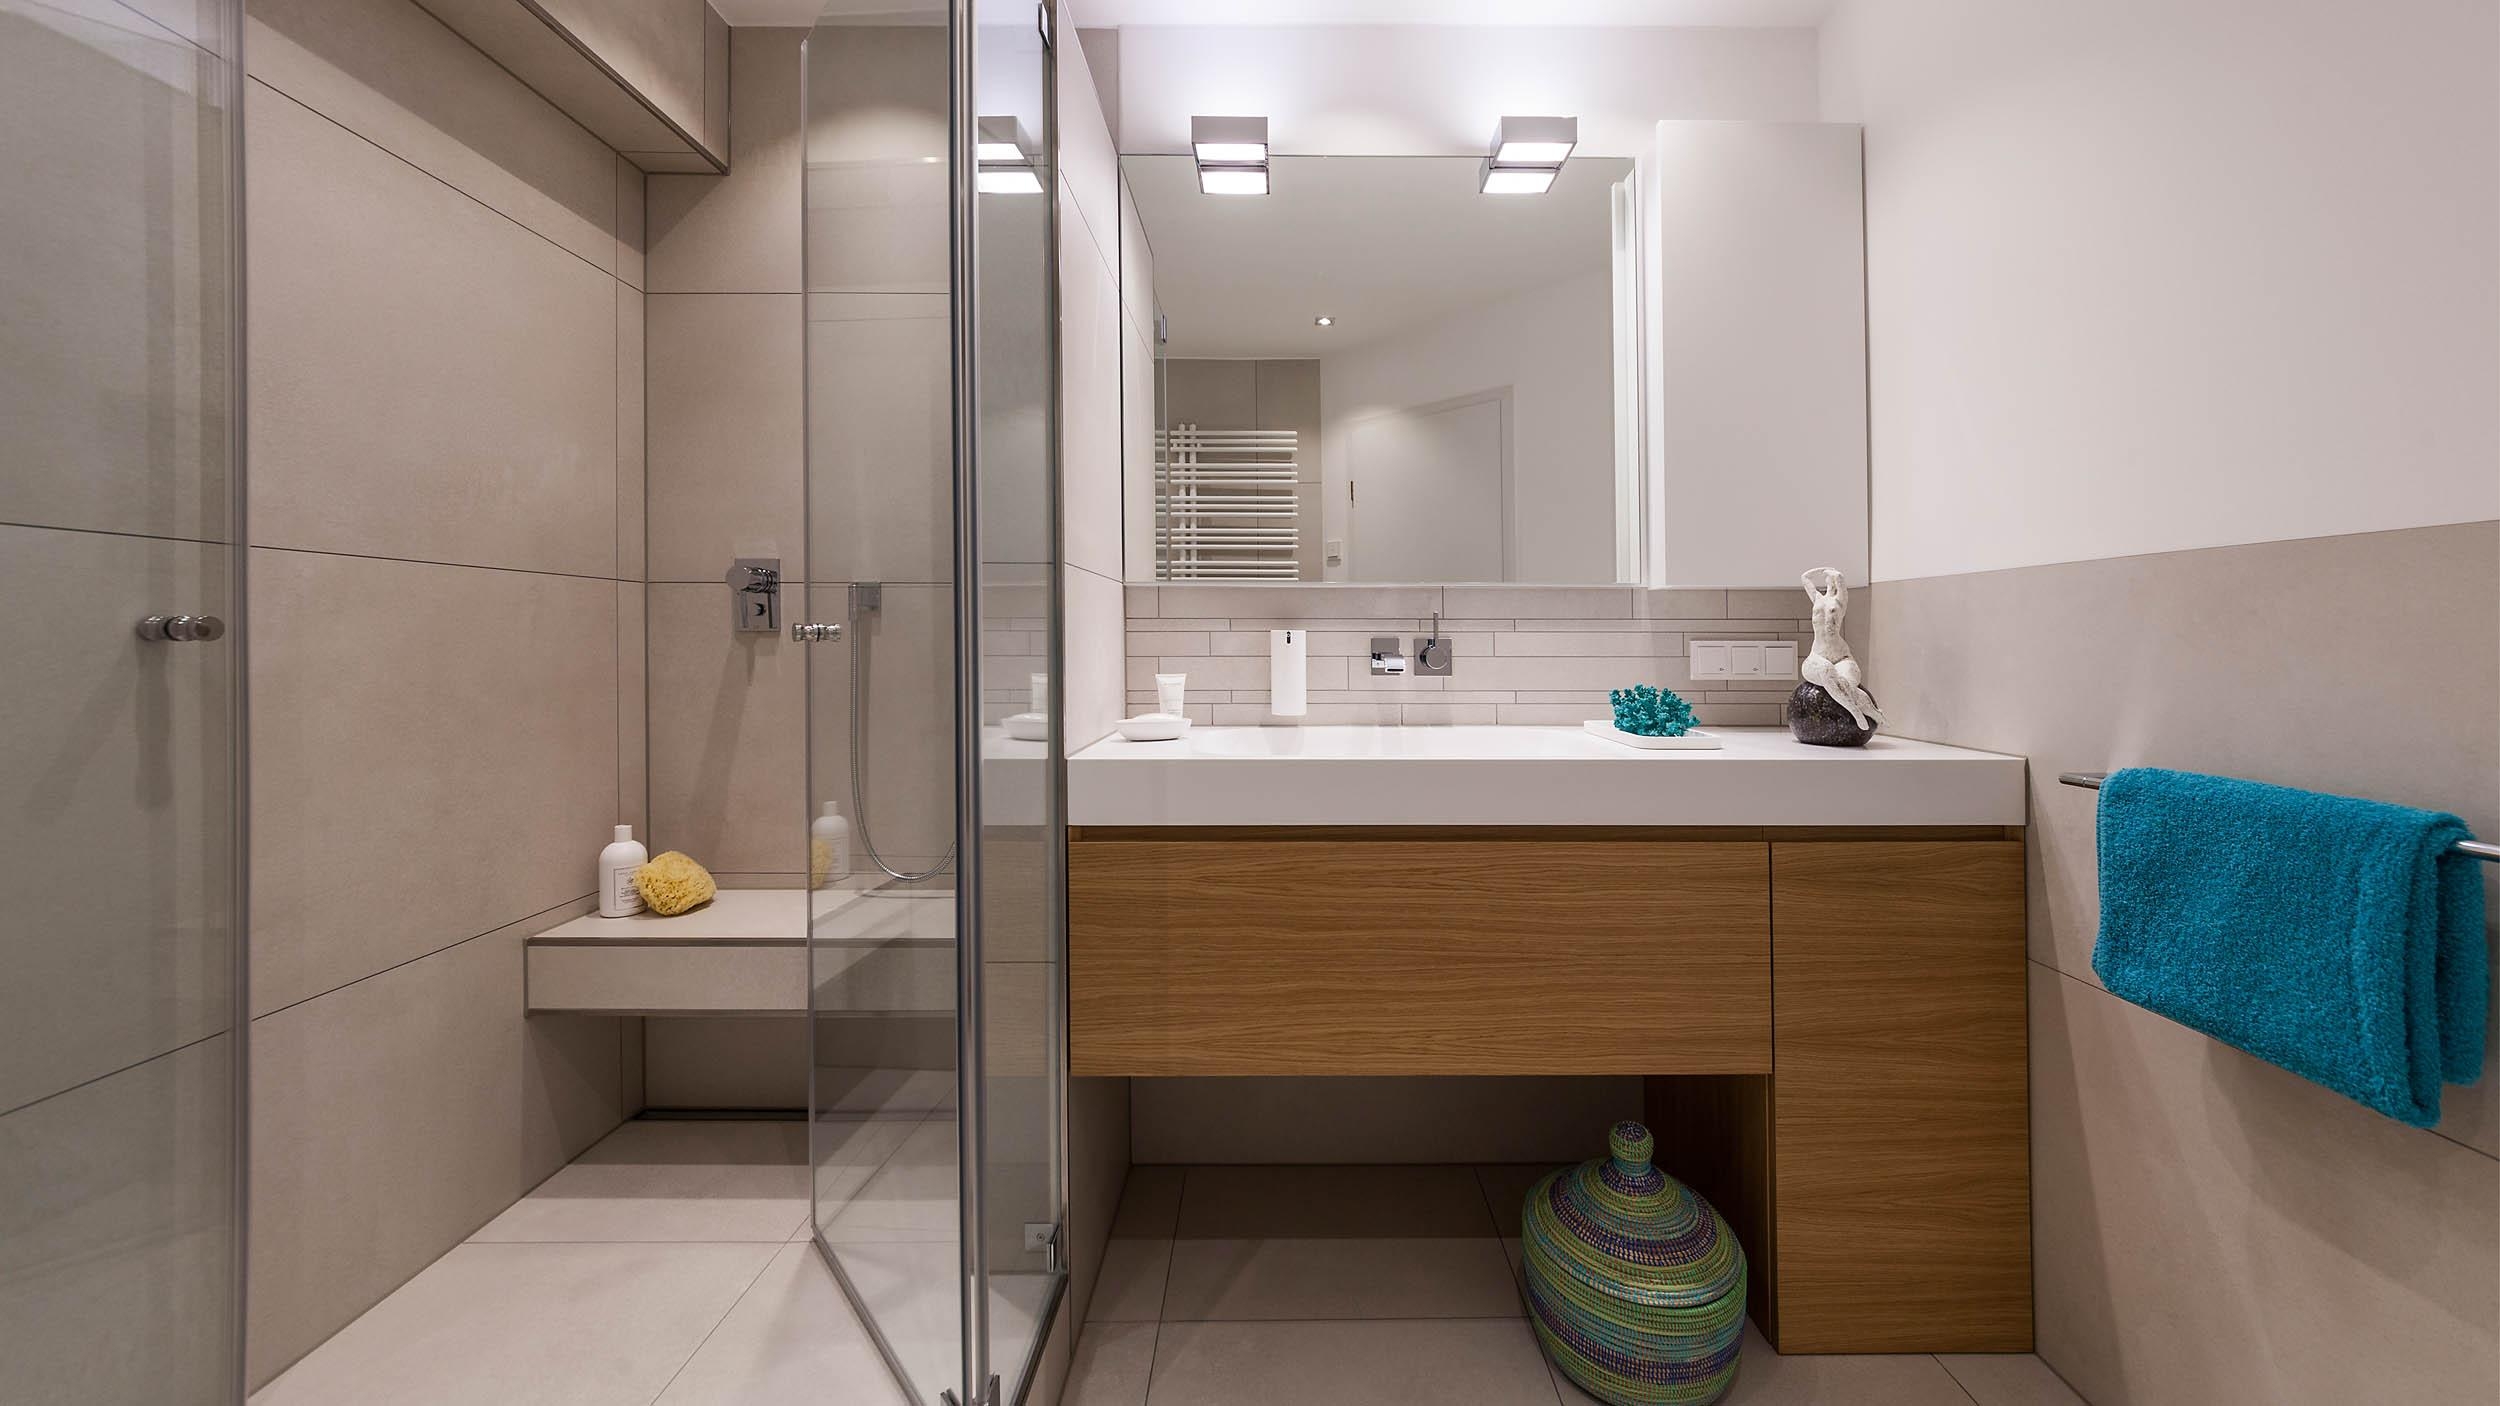 -Anzeige- #bestebadstudios #badezimmer #bad #badmöbel #dusche #waschbecken #modernesbadezimmer #badsanierung